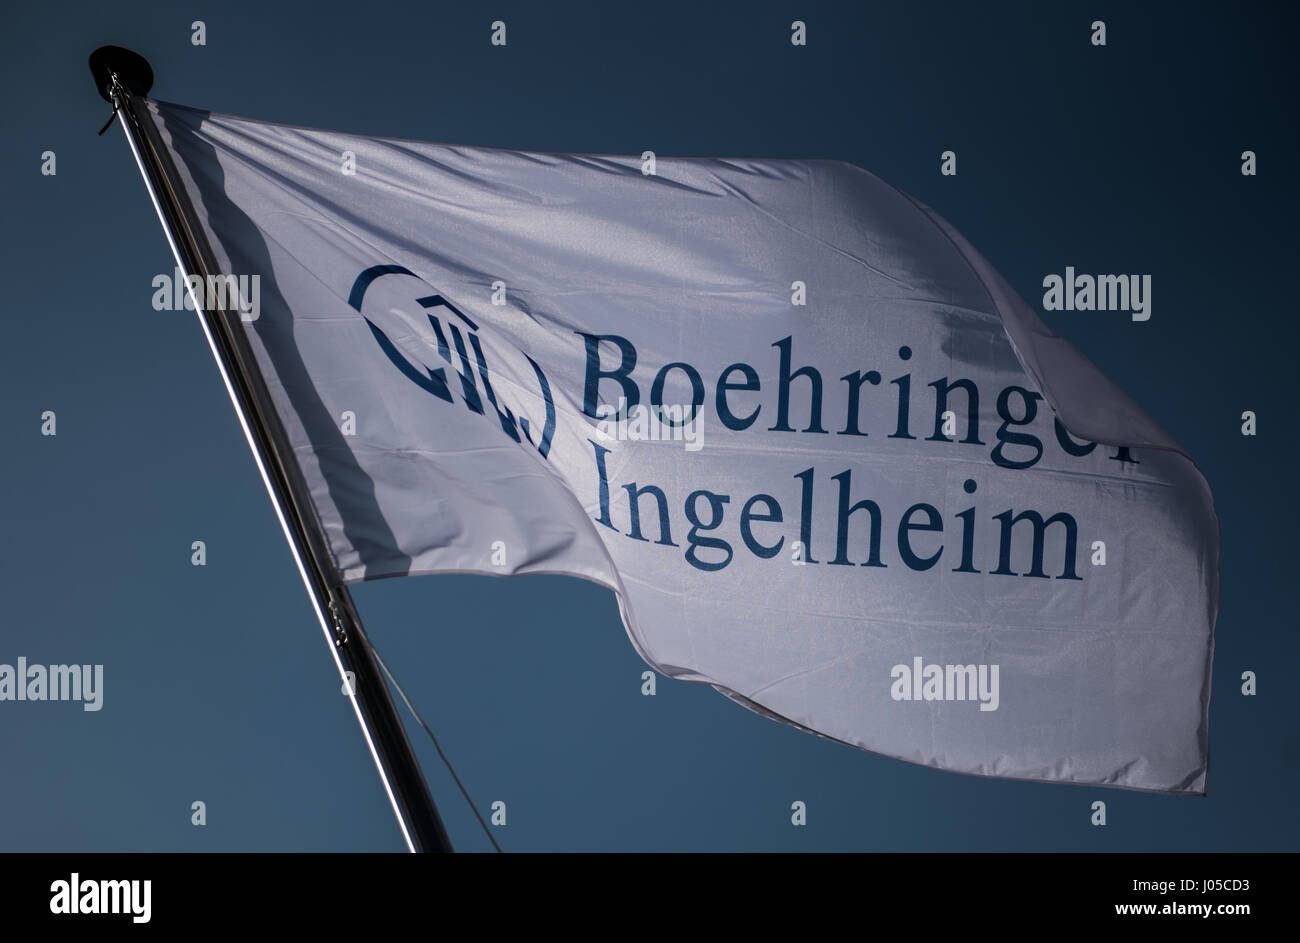 Ingelheim, Germania. 1 Aprile, 2017. Una bandiera con il logo di "Boehringer Ingelheim' visto presso la sede aziendale della società farmaceutica Boehringer Ingelheim in Ingelheim, Germania, 01 aprile 2017. Foto: Andreas Arnold/dpa/Alamy Live News Foto Stock